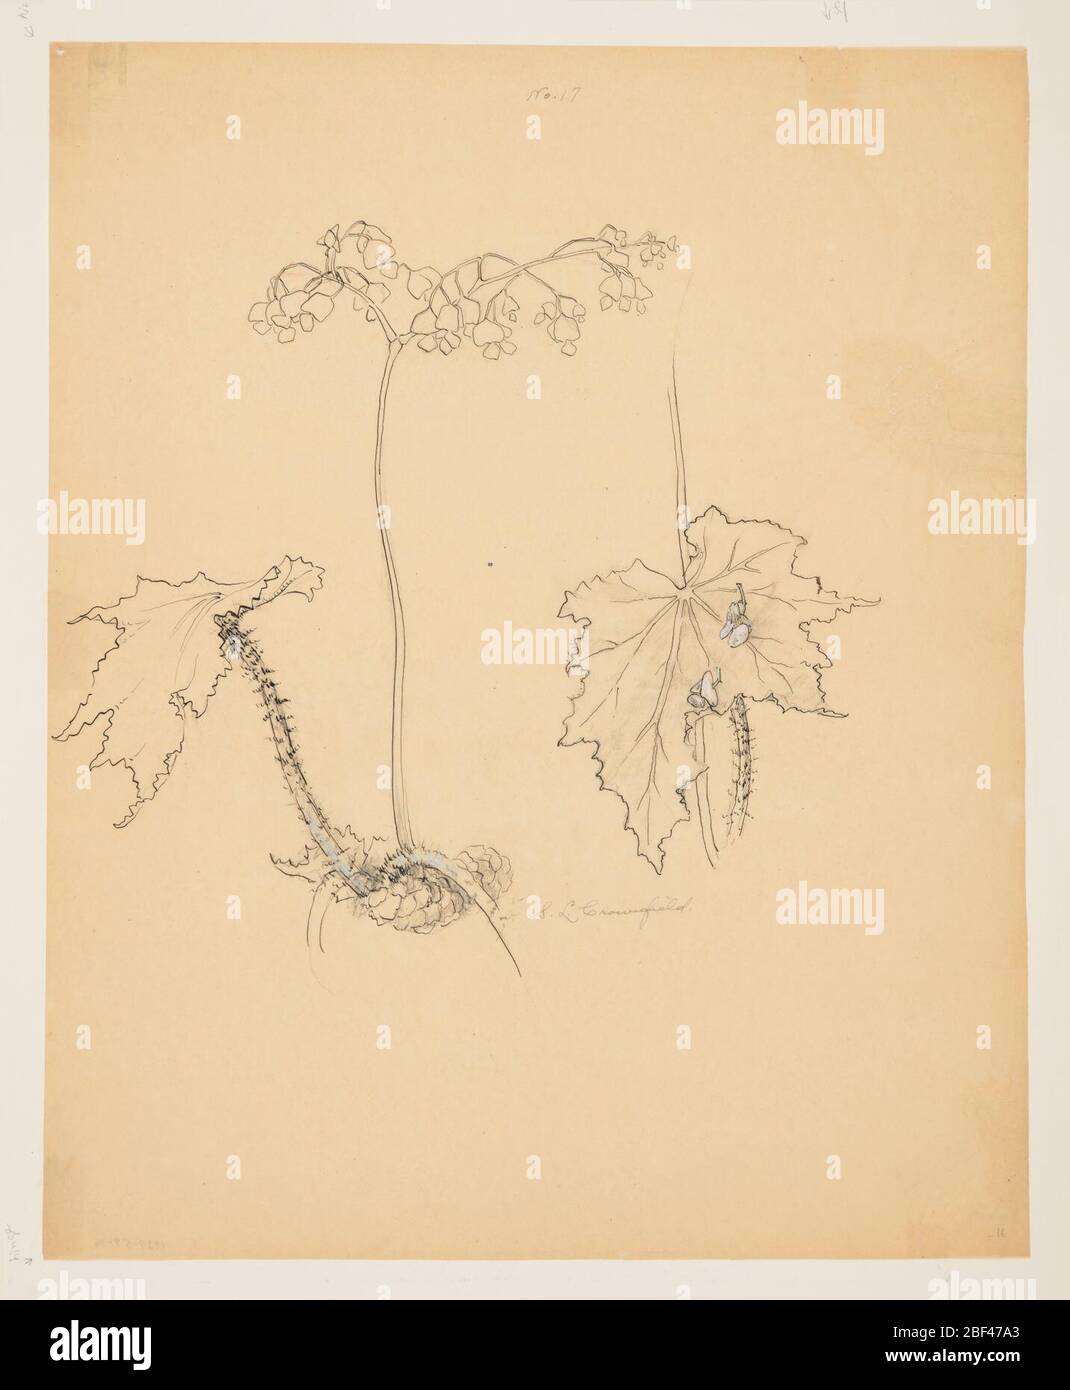 Étude de Begonia. Feuille verticale représentant une plante de la mensonie, y compris les détails d'une feuille, avec du graphite utilisé pour l'ombrage et des petites touches de gouache verte sur les tiges, ainsi que du rose pâle sur les fleurs. Banque D'Images